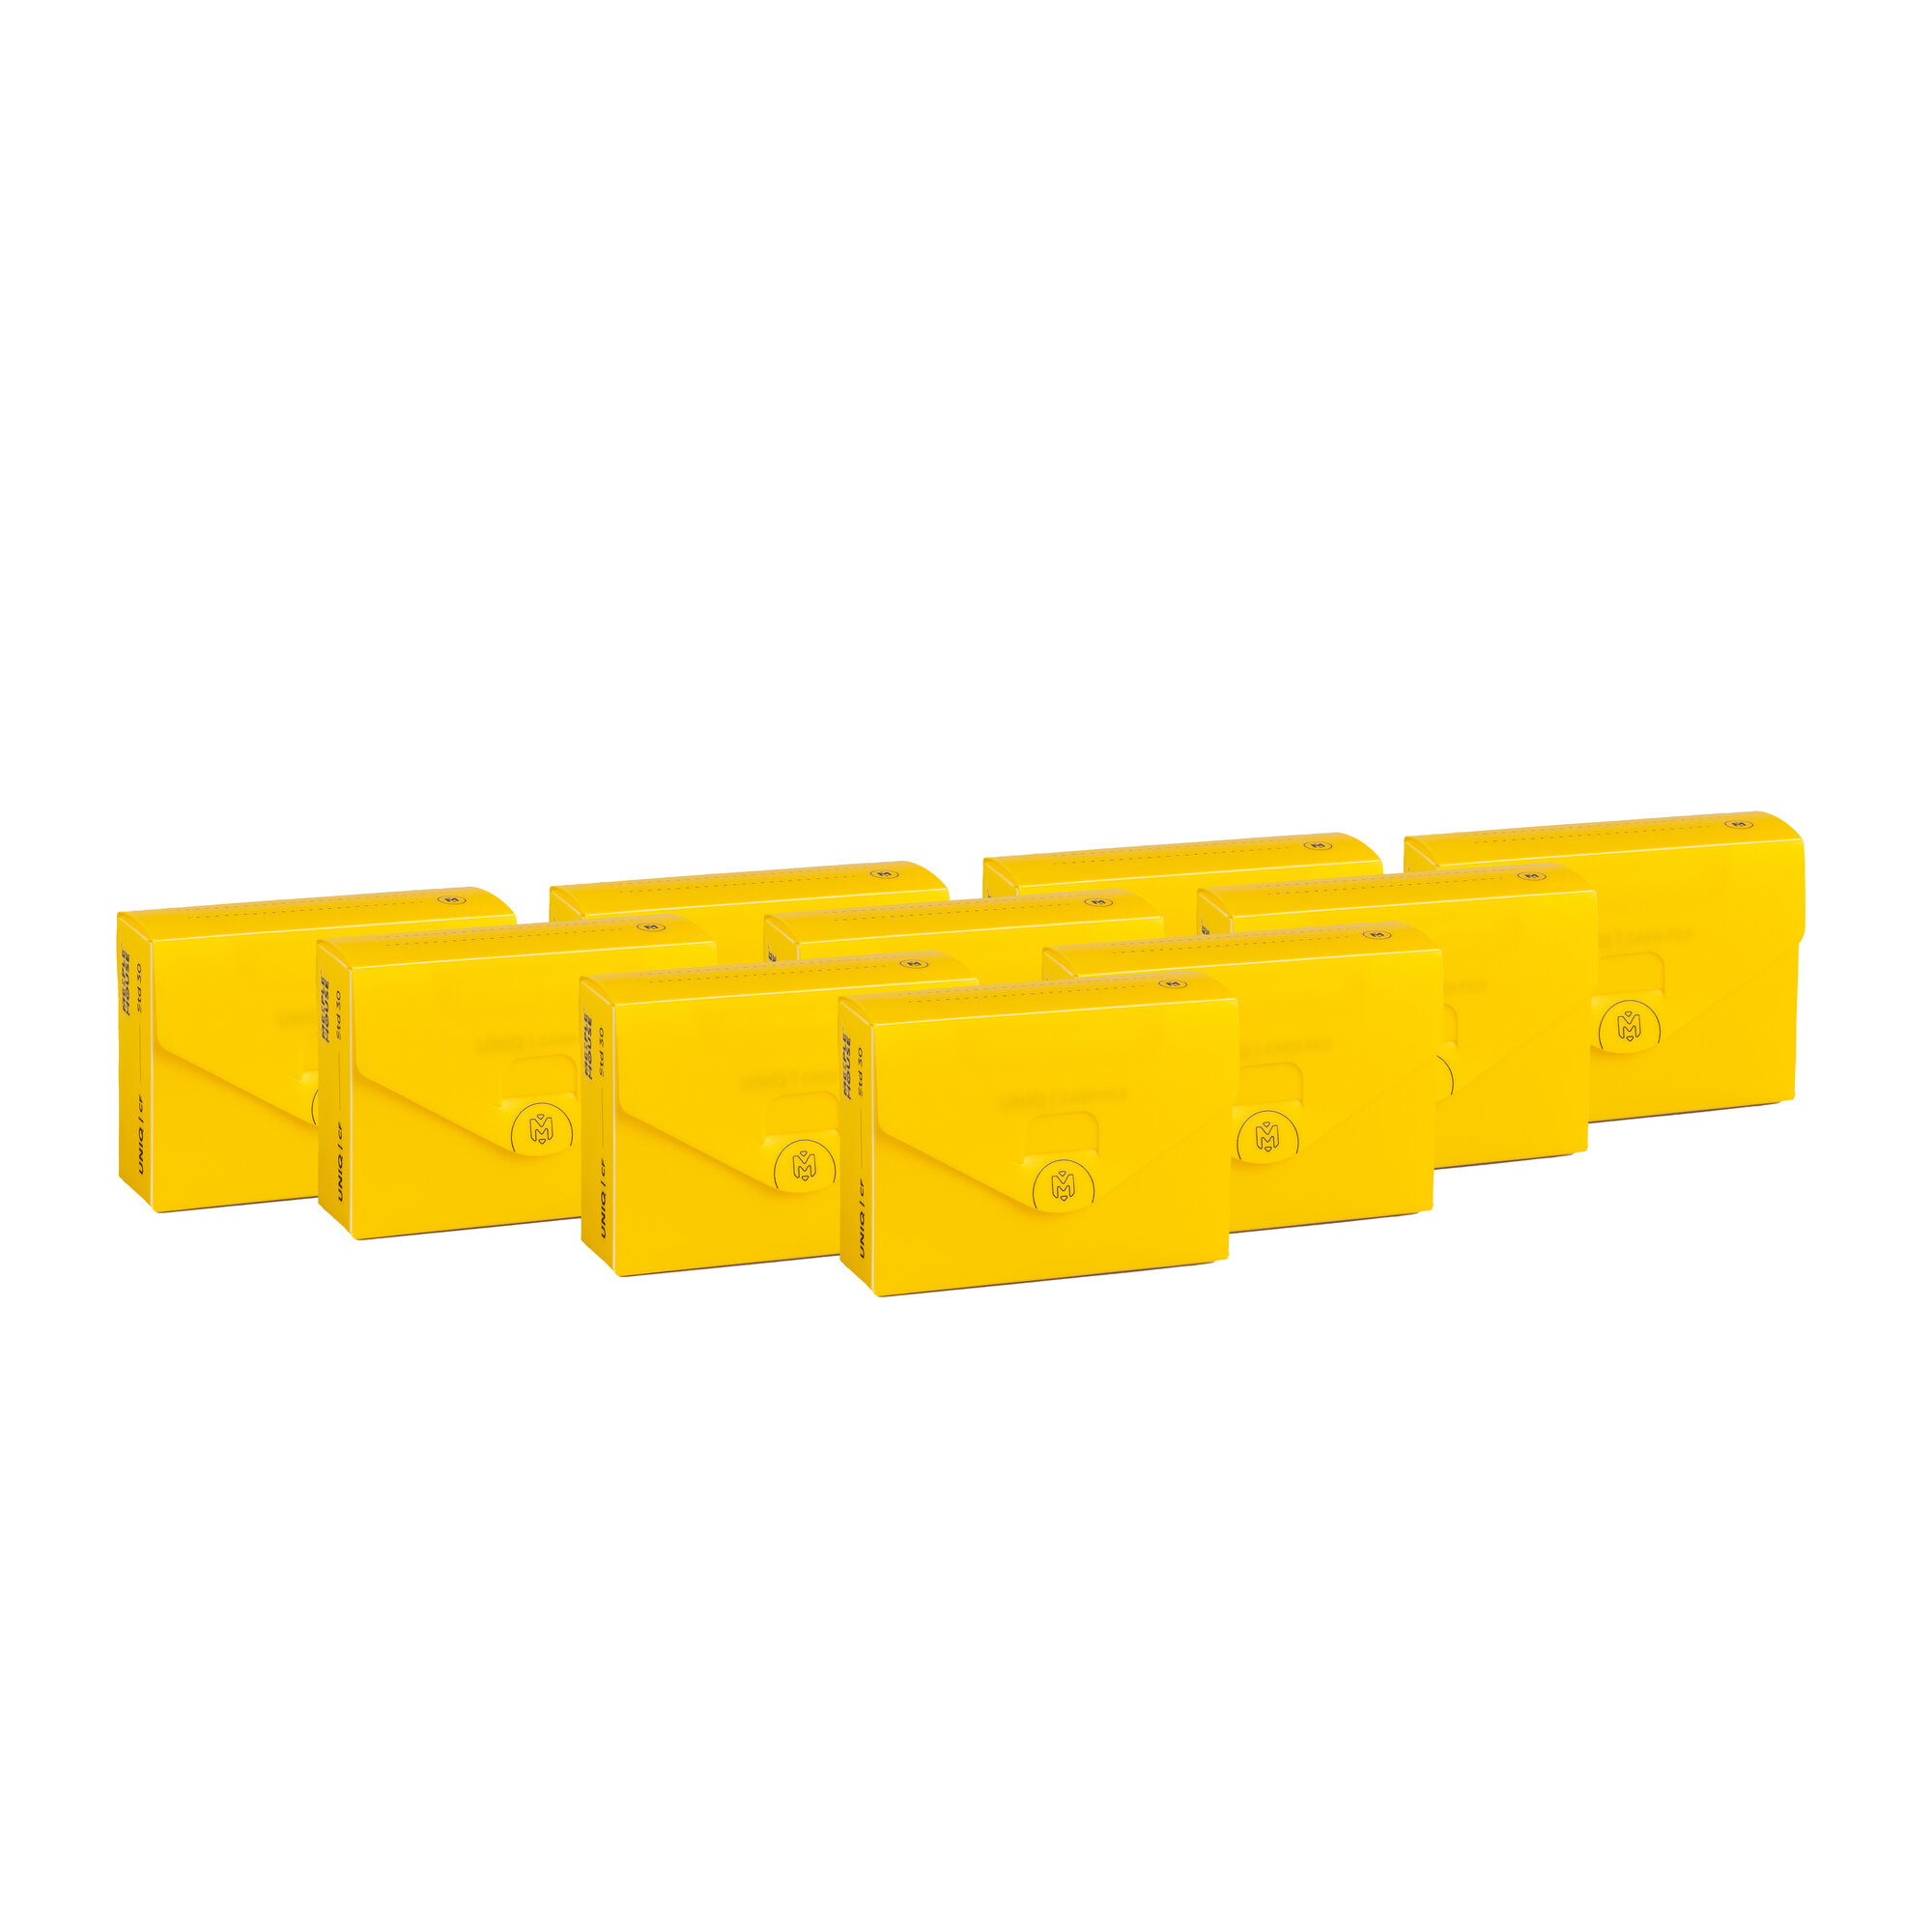 Набор коробочек Meeple House UCF Standard 30 мм GEN2 10 шт. желтый, для карт MTG, Pokemon